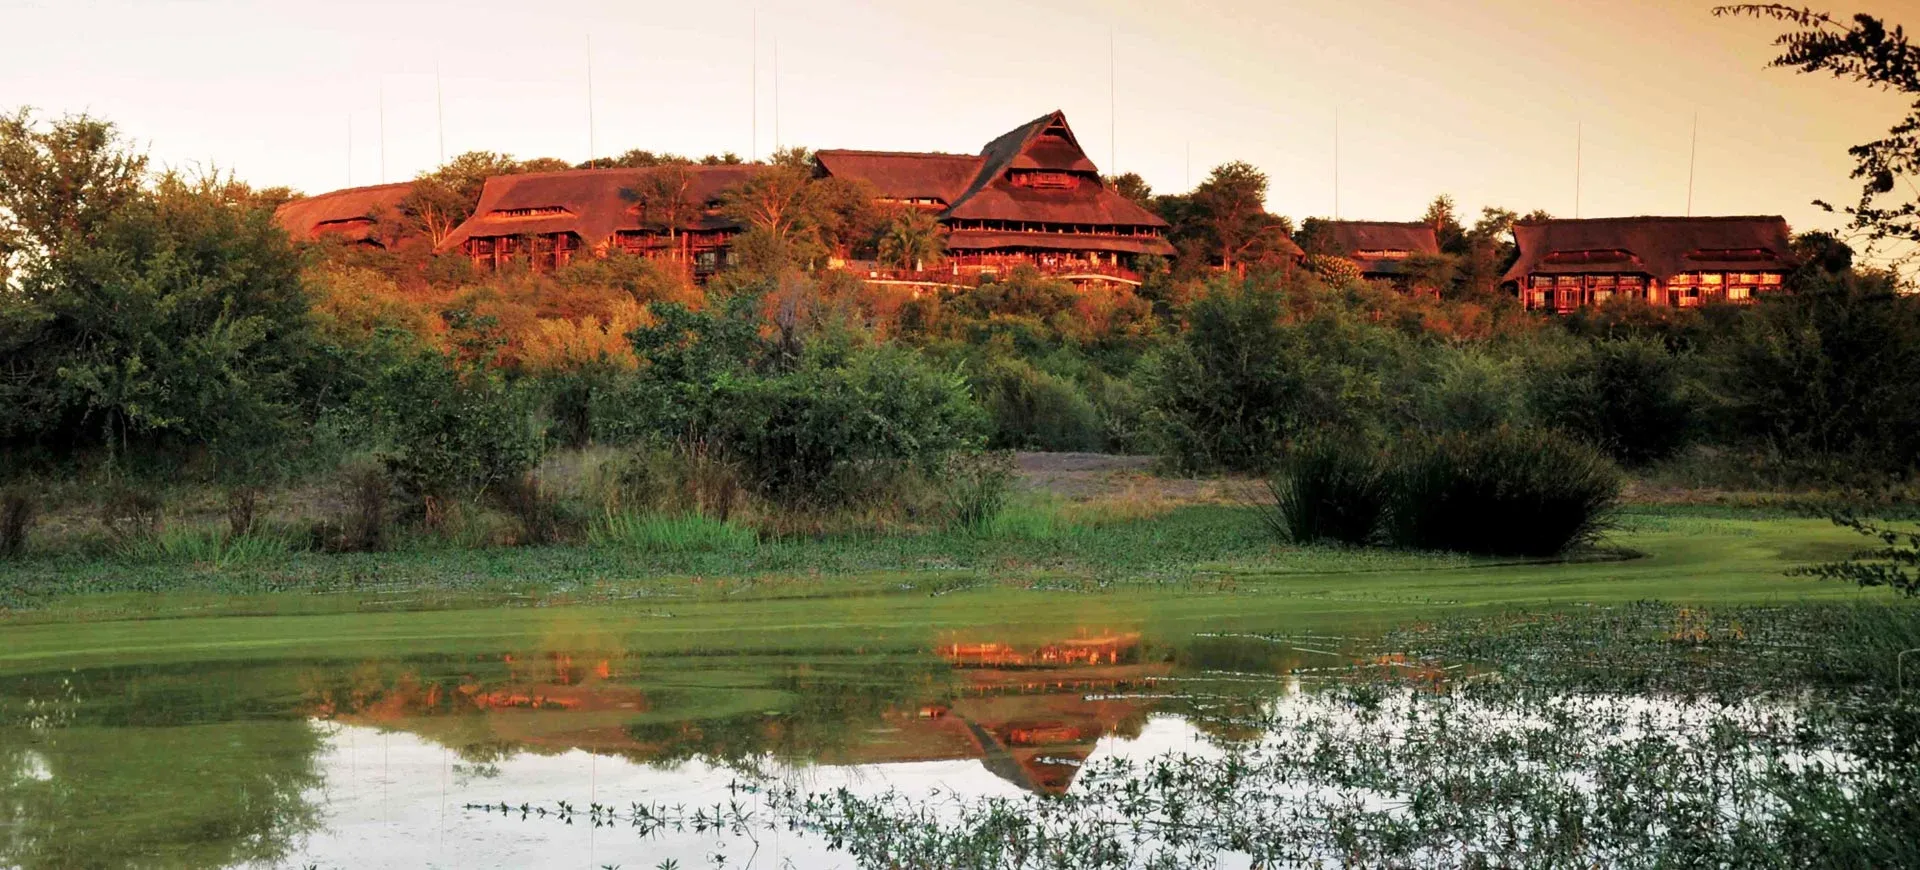 Victoria Falls Safari Lodges